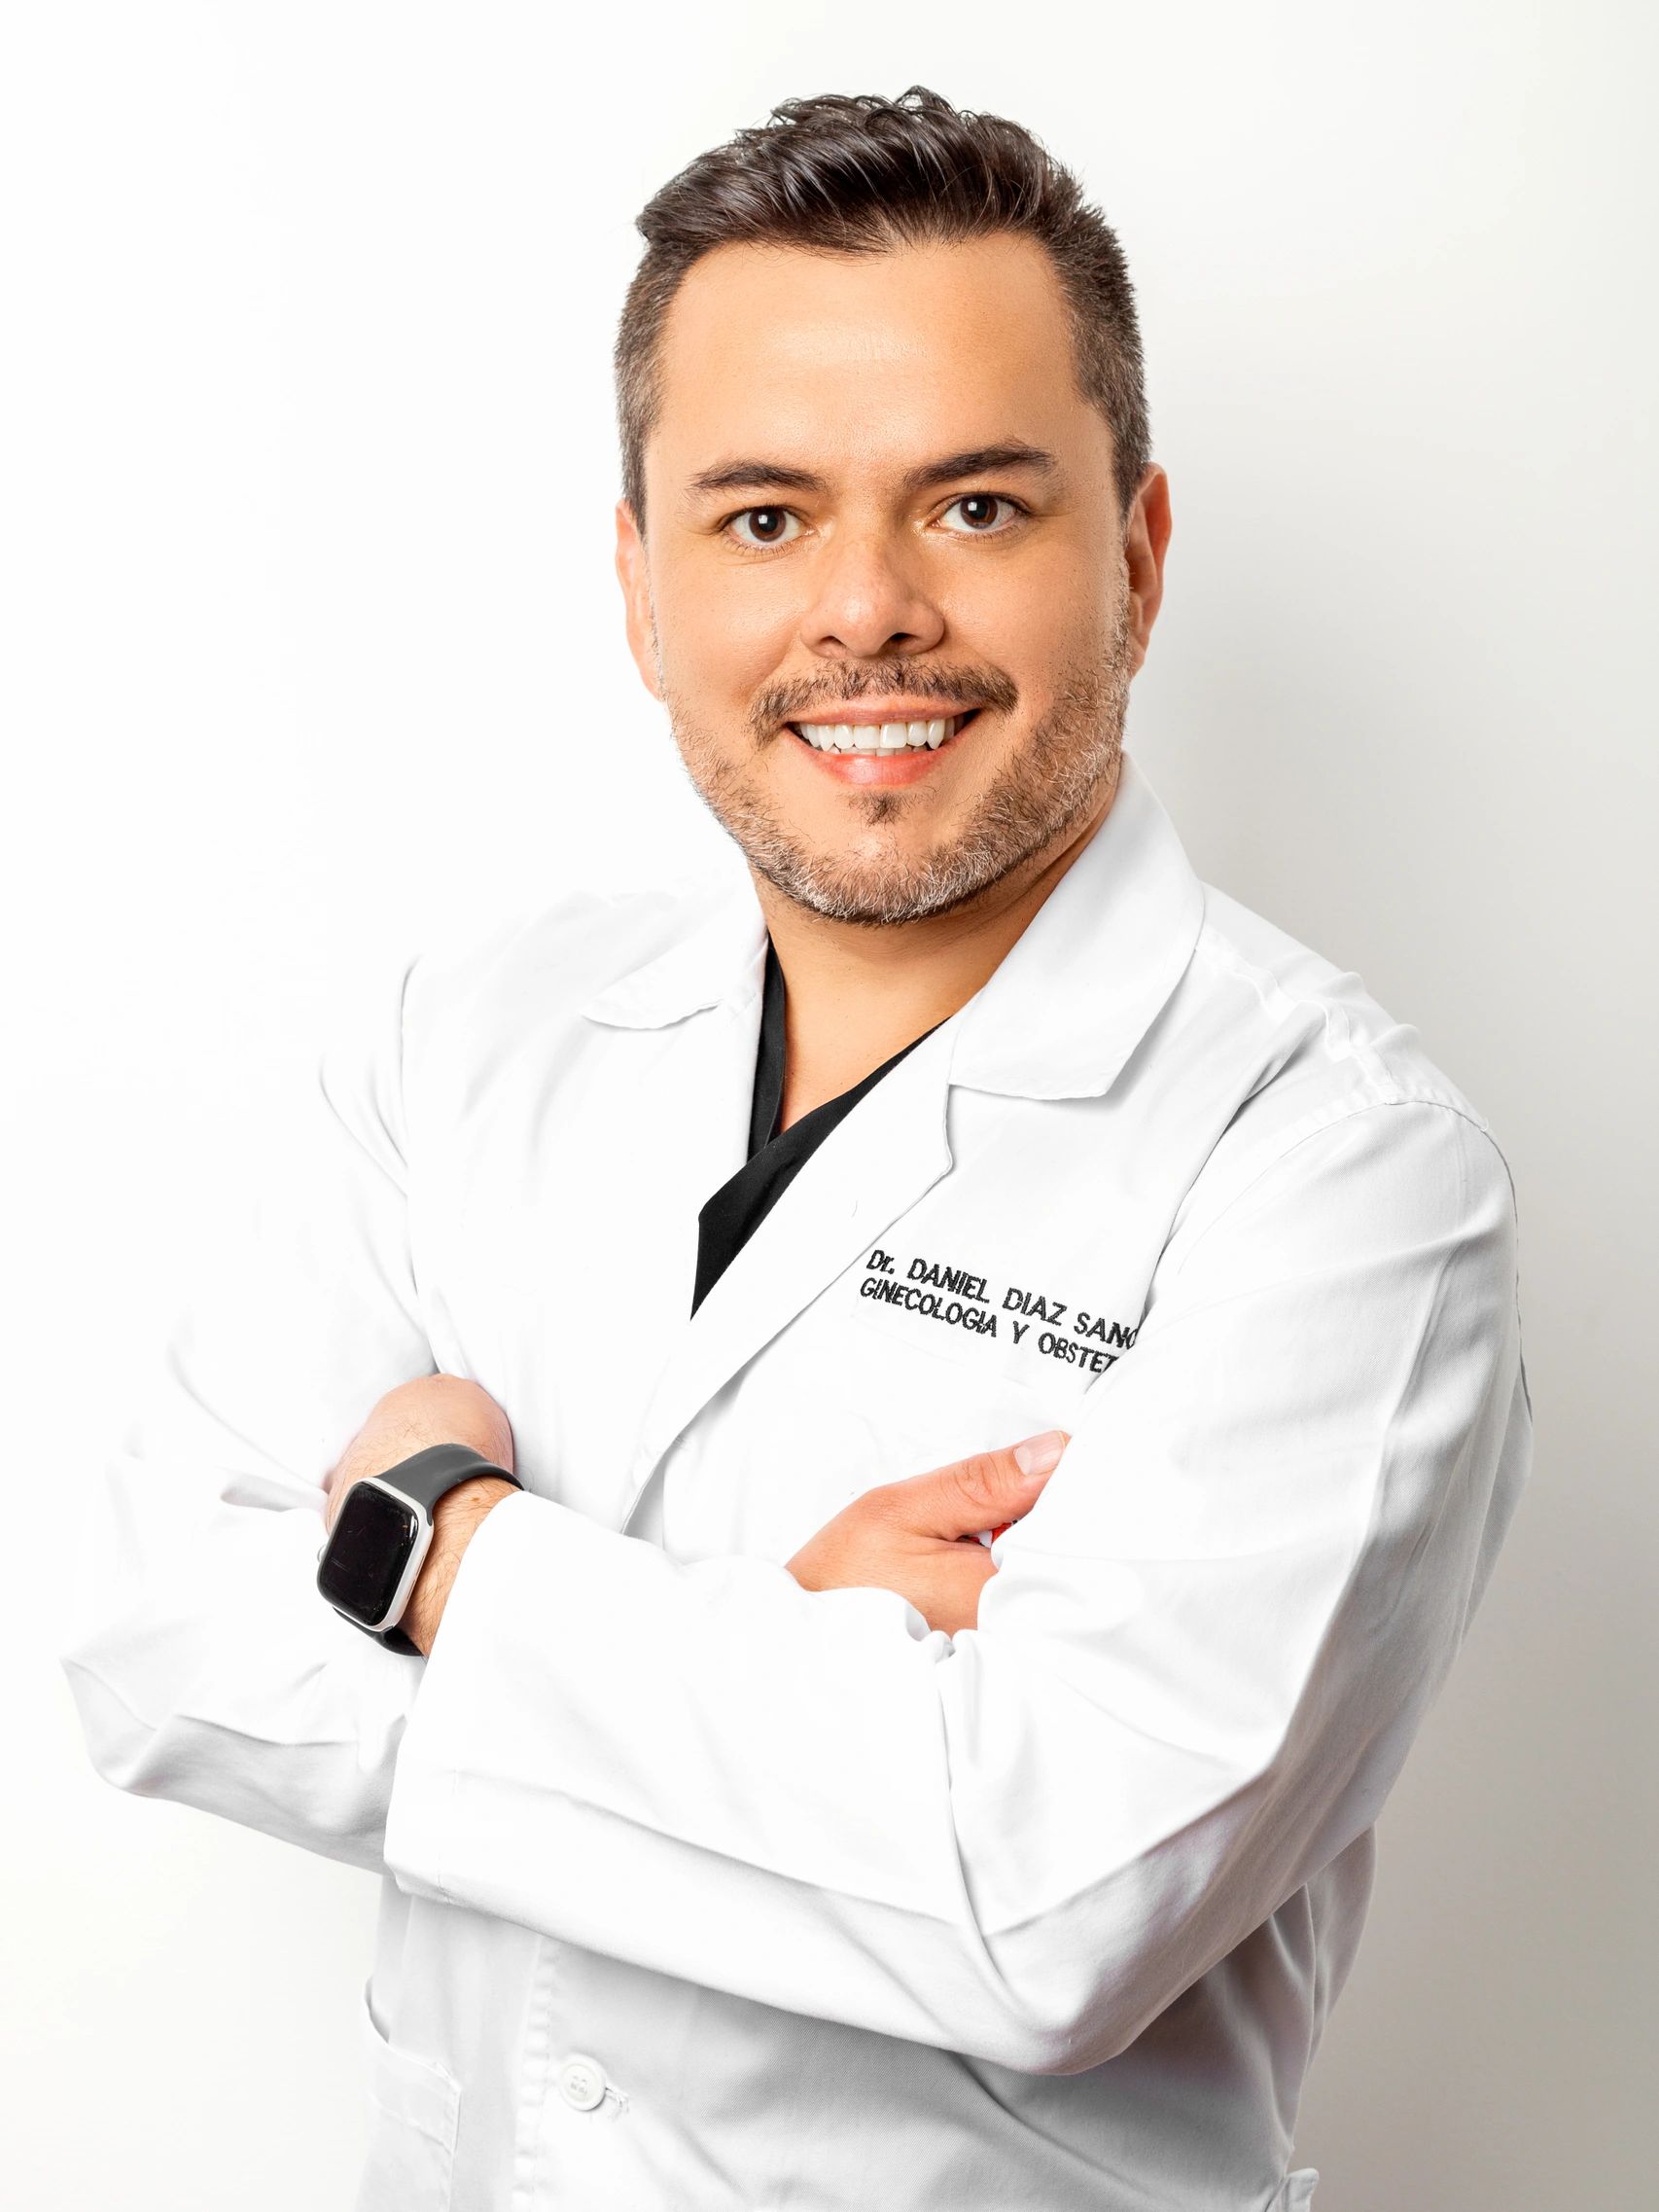 Dr Daniel Diaz